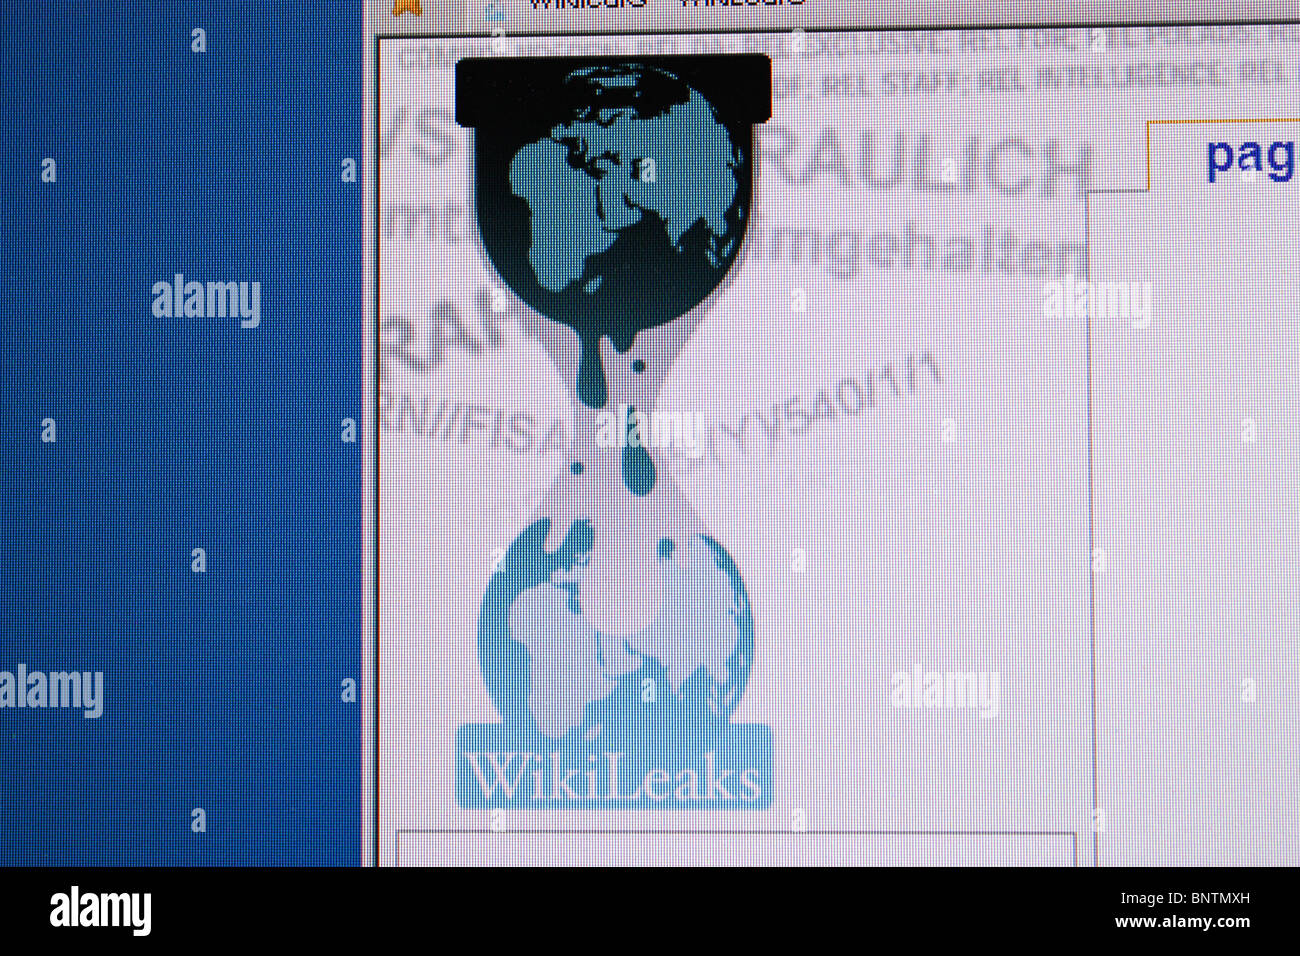 internet leaks online web website wiki wikileaks Stock Photo